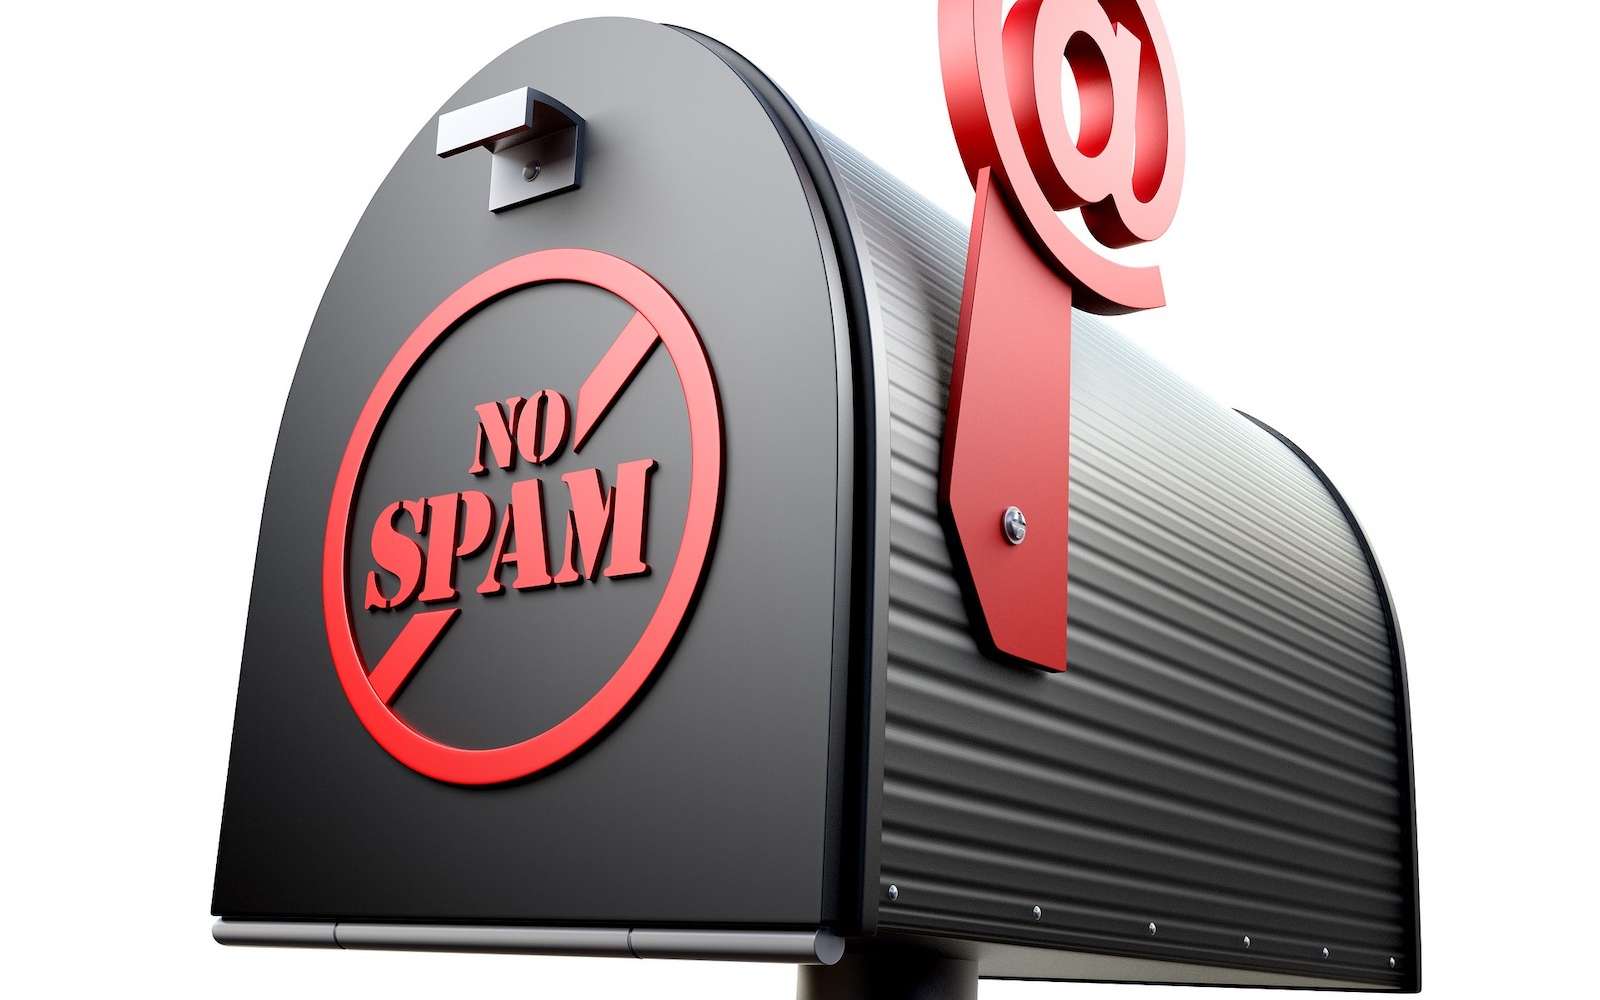 Le spam n'est pas que de la publicité dans votre boîte aux lettres. C'est aussi et surtout des arnaques et des virus qu'il faut absolument éradiquer. © AbsolutVision, Pixabay